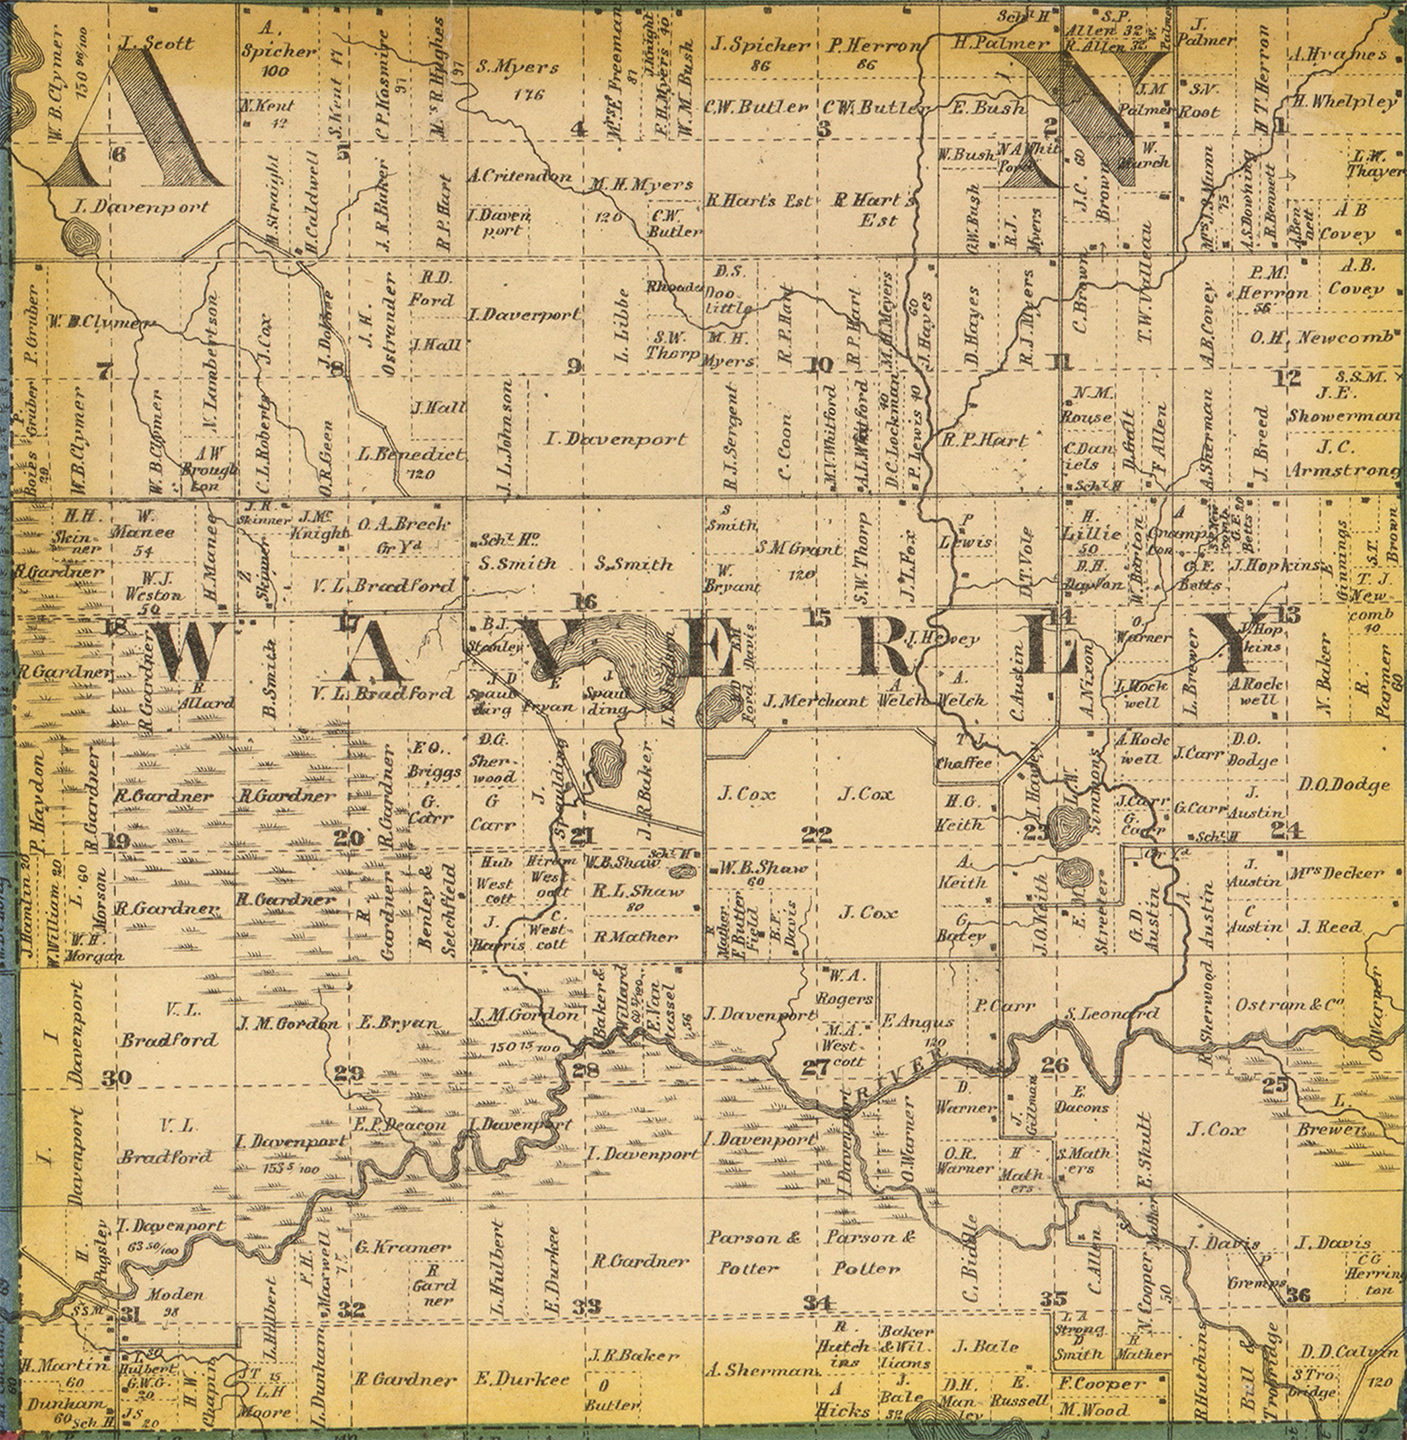 1860 Waverly Township, Michigan landownership map